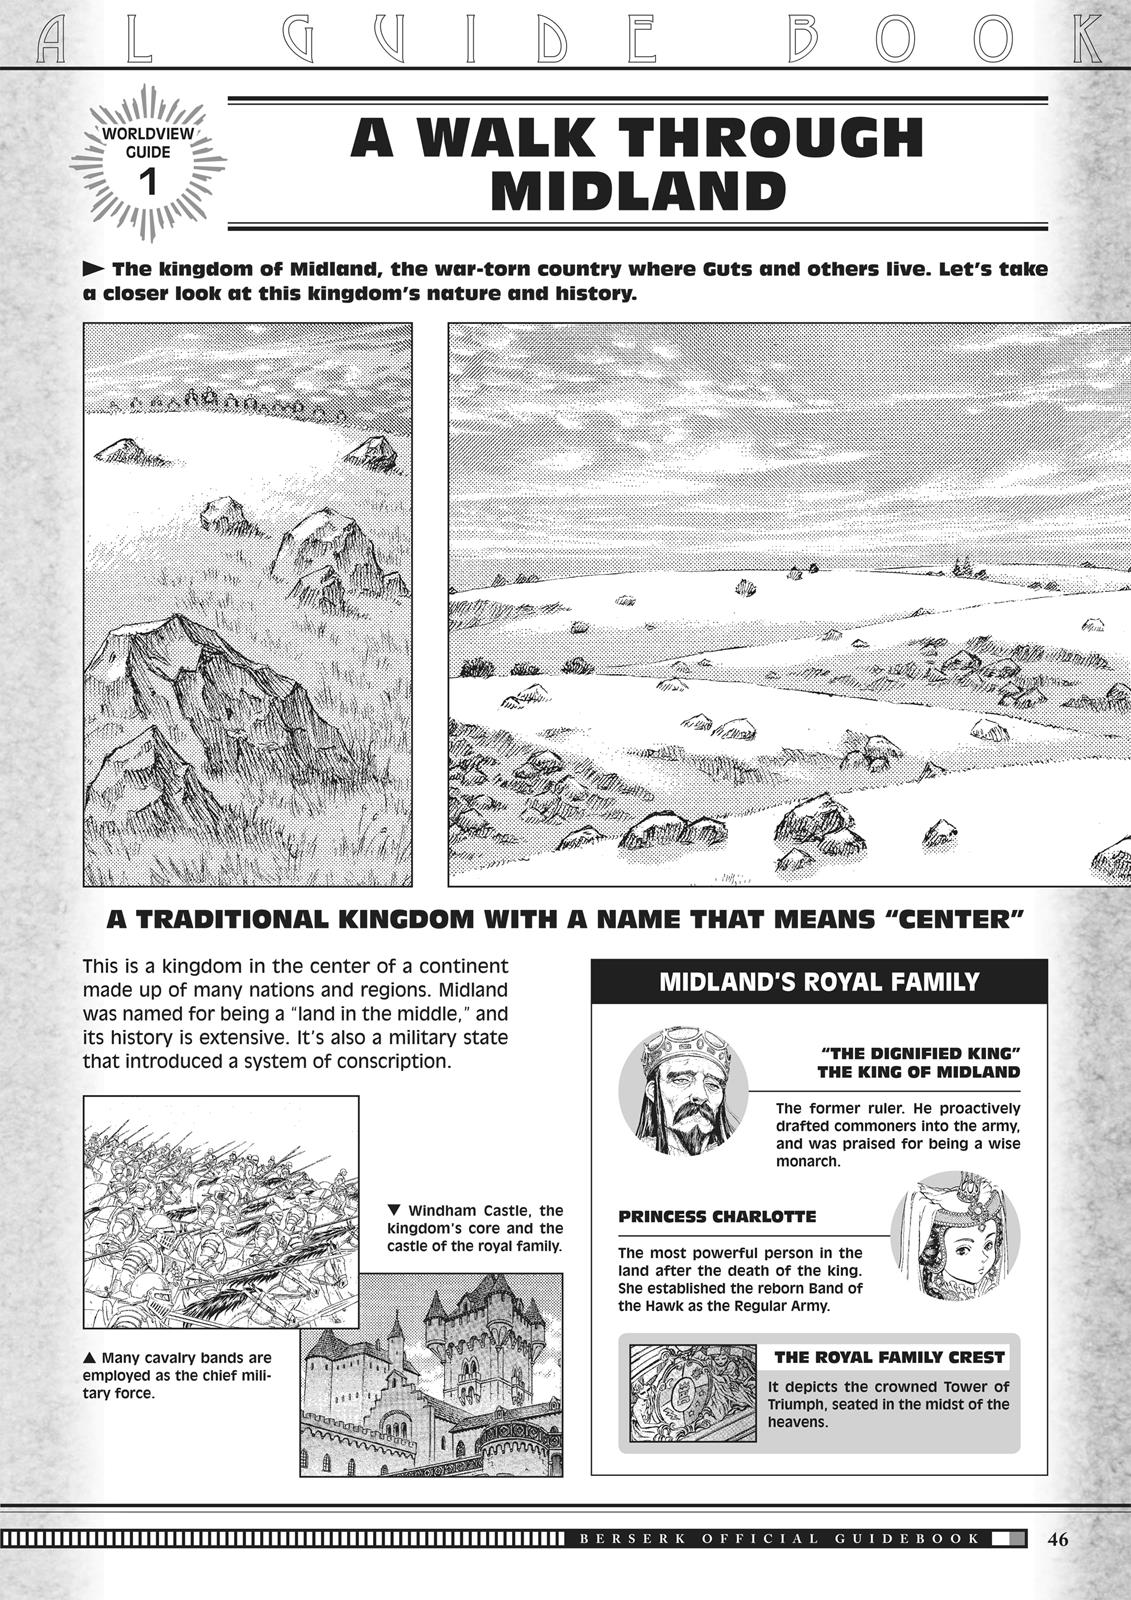 Berserk Manga Chapter 350.5 image 046